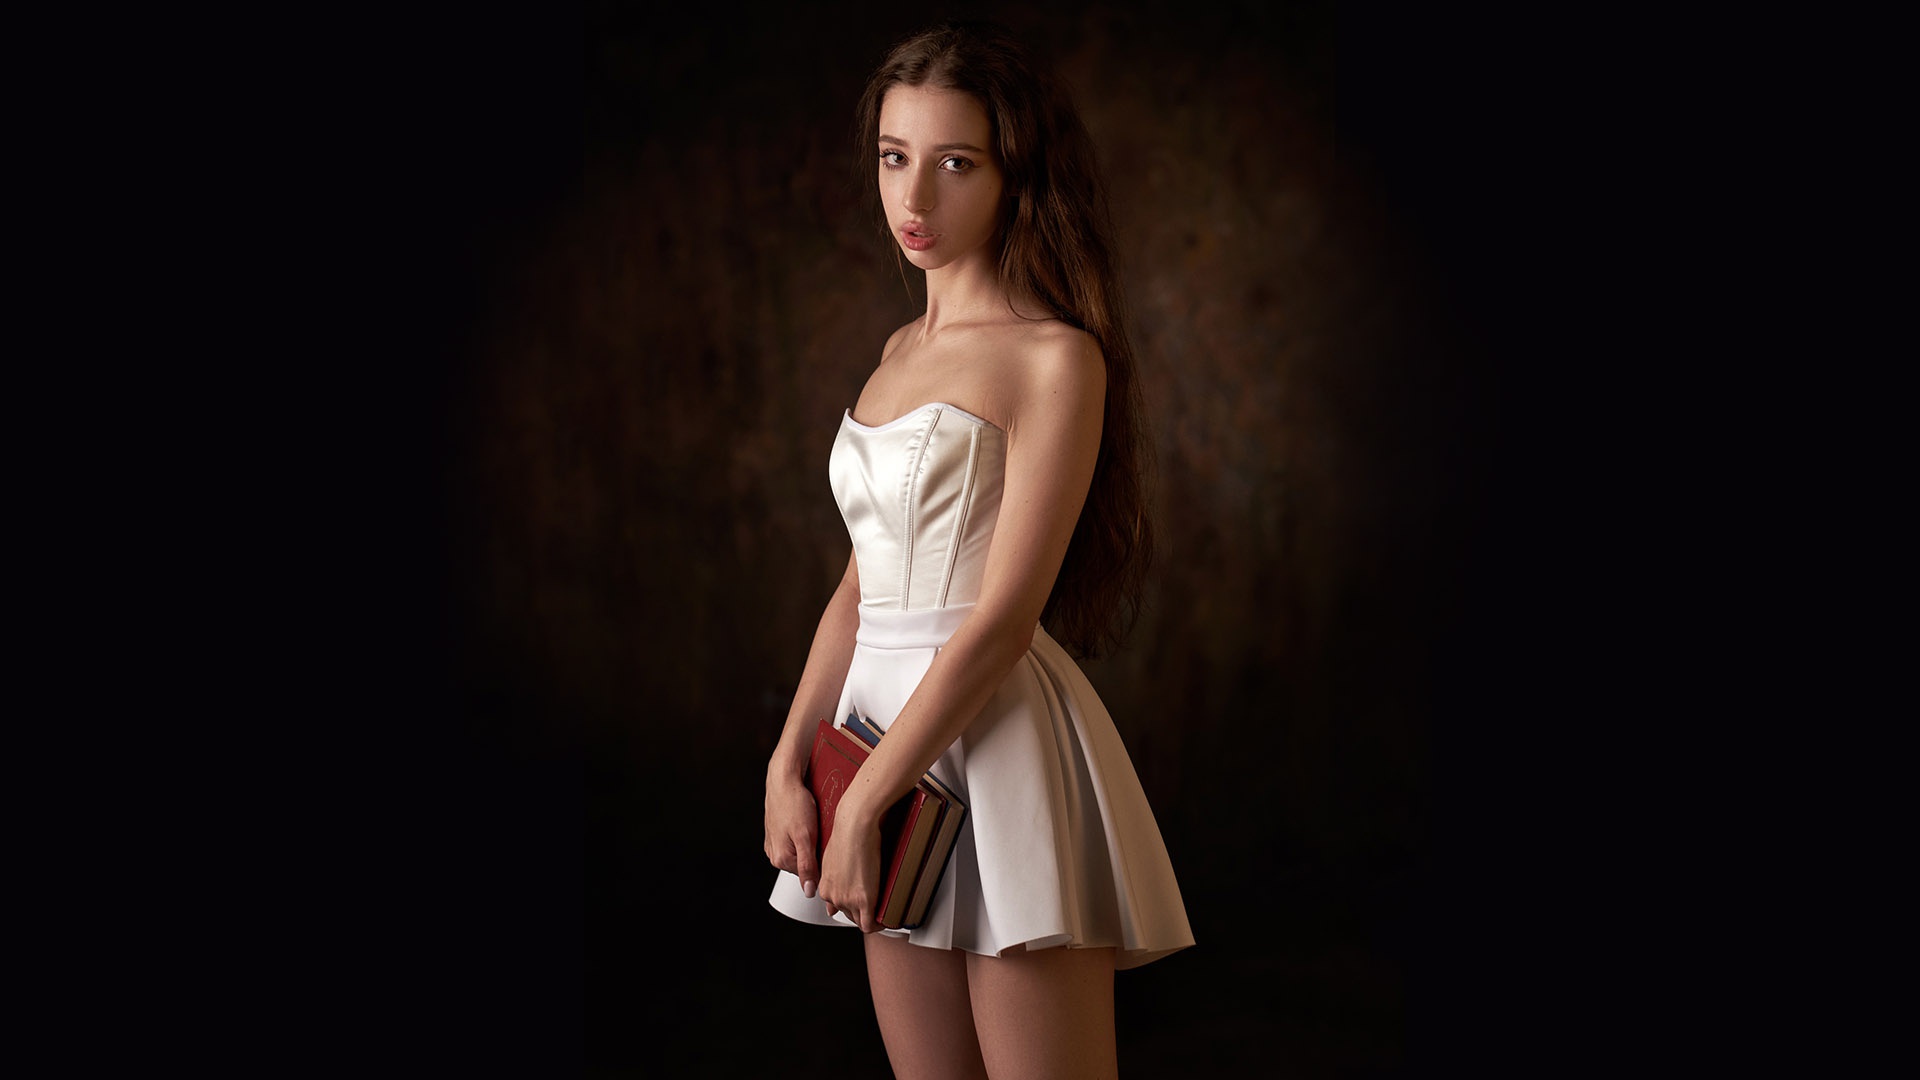 Book Brunette Dress Girl Legs Long Hair White Dress 1920x1080